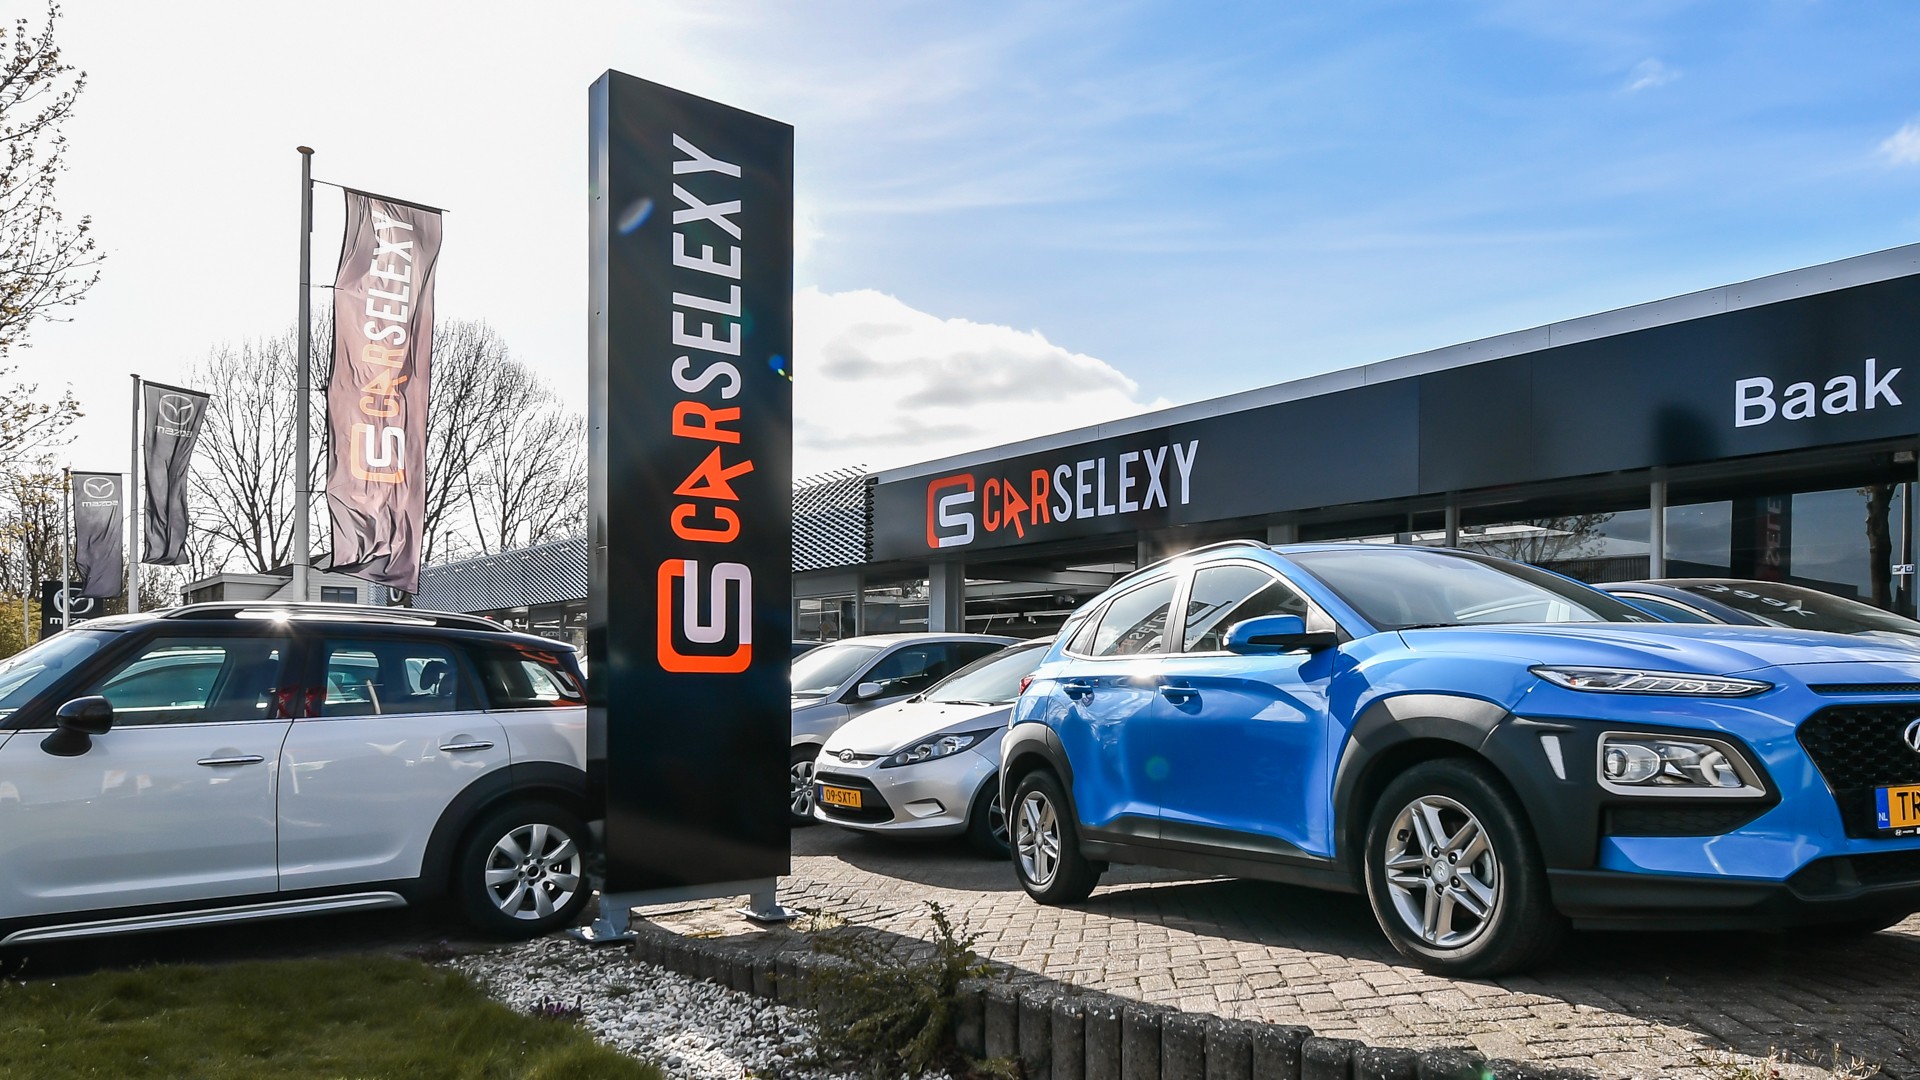 Carselexy dealer Baak Autocenter in Alphen aan den Rijn in de provincie Zuid-Holland